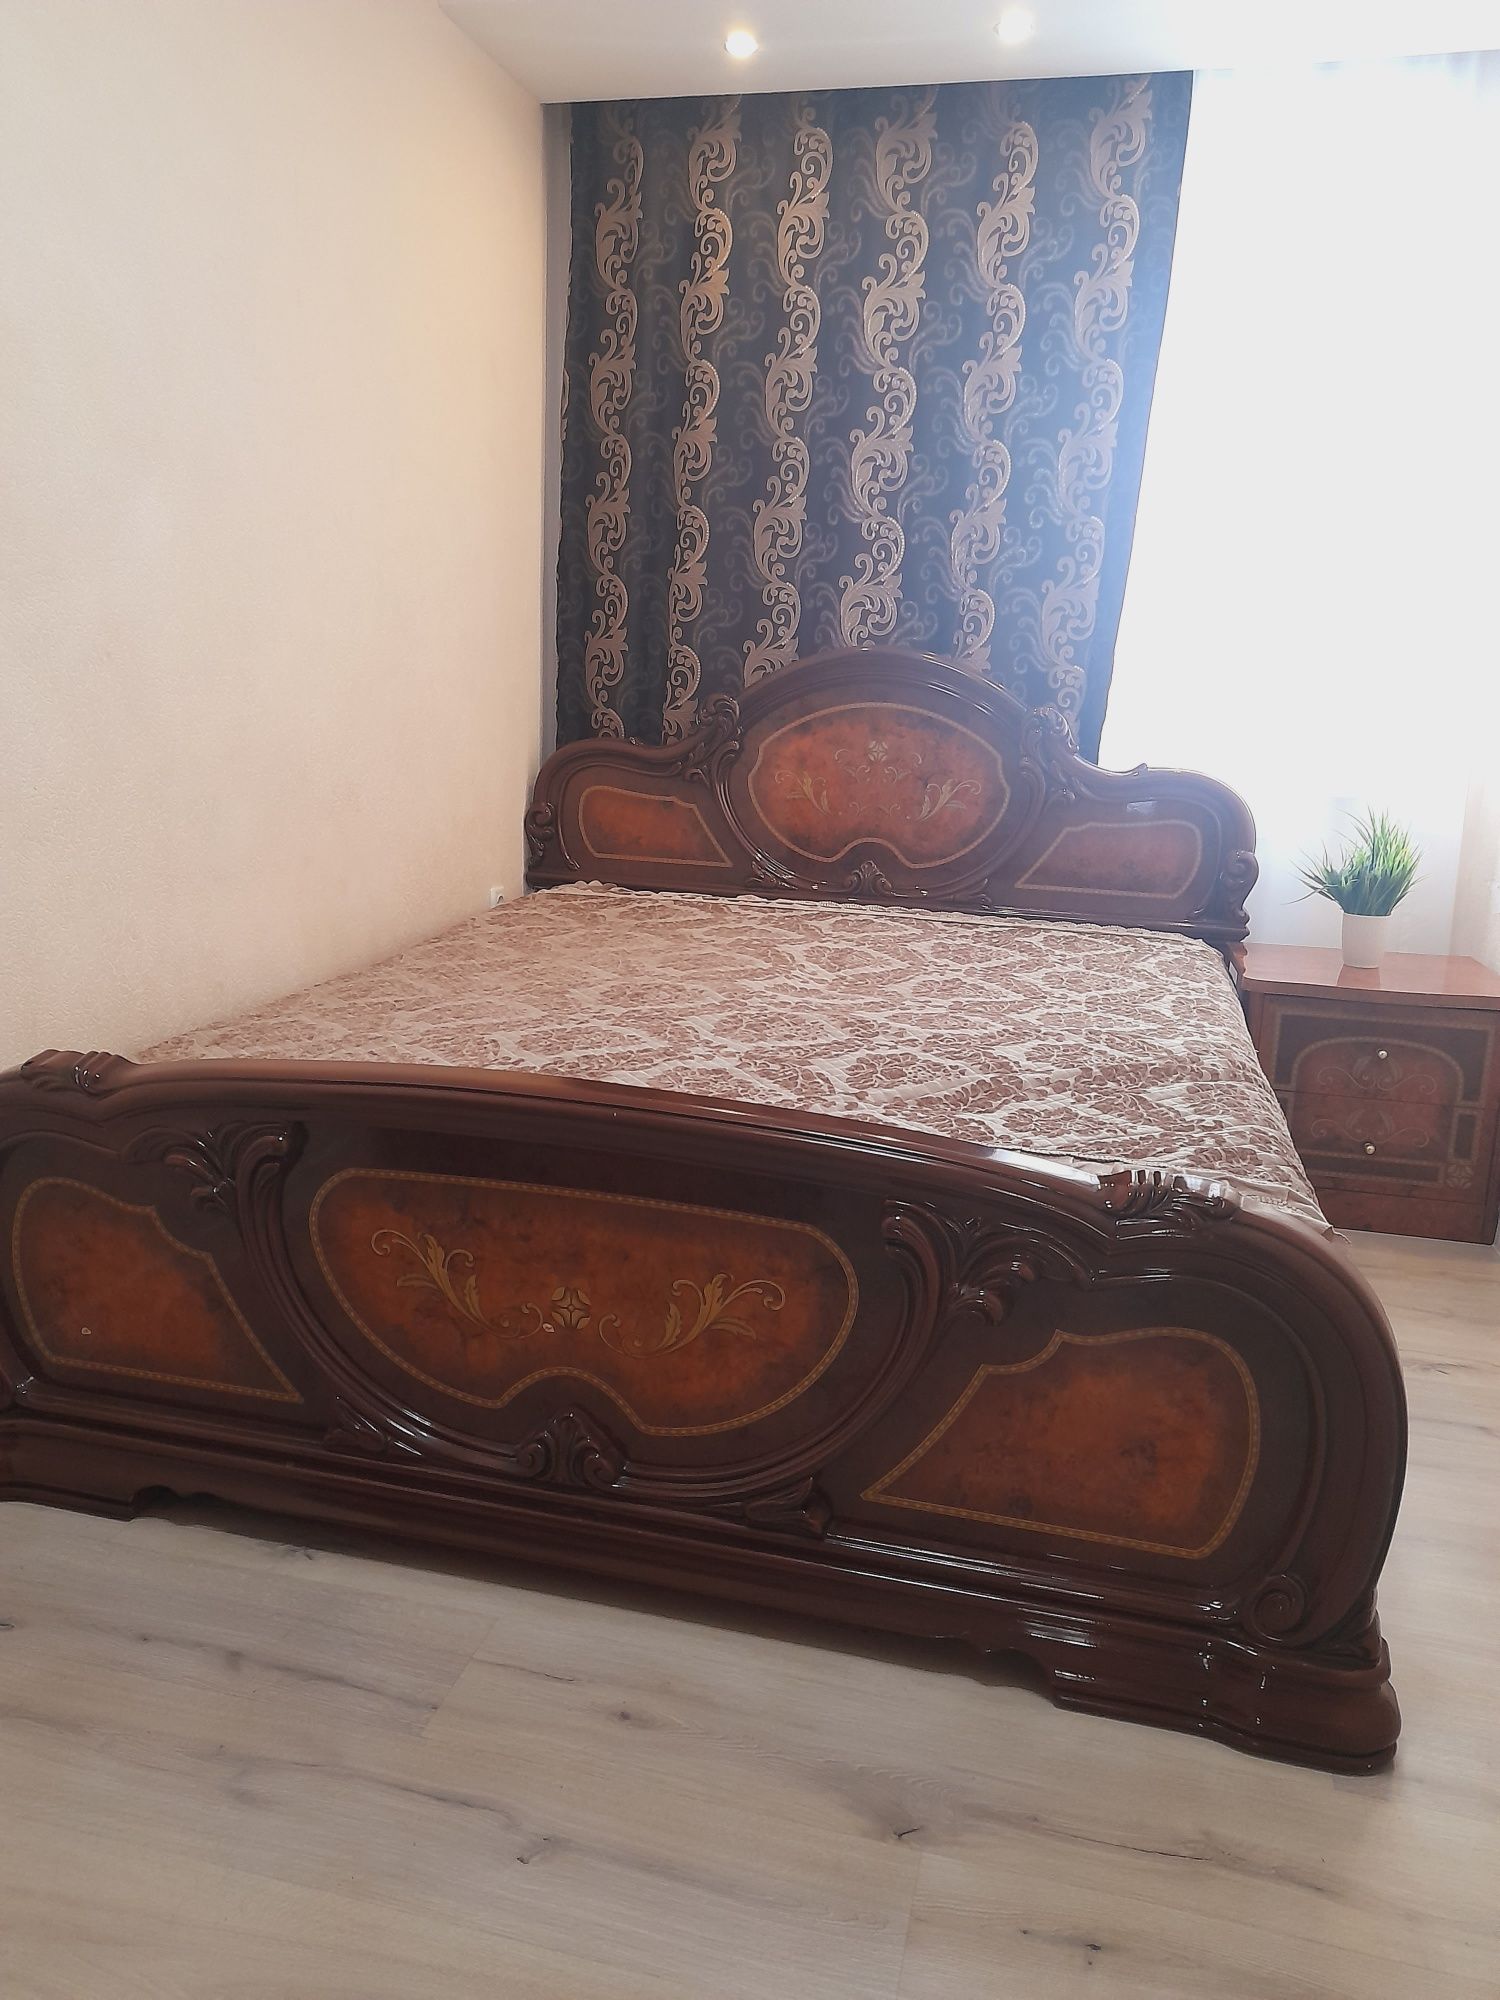 Продам двухместную кровать фирмы Шатура